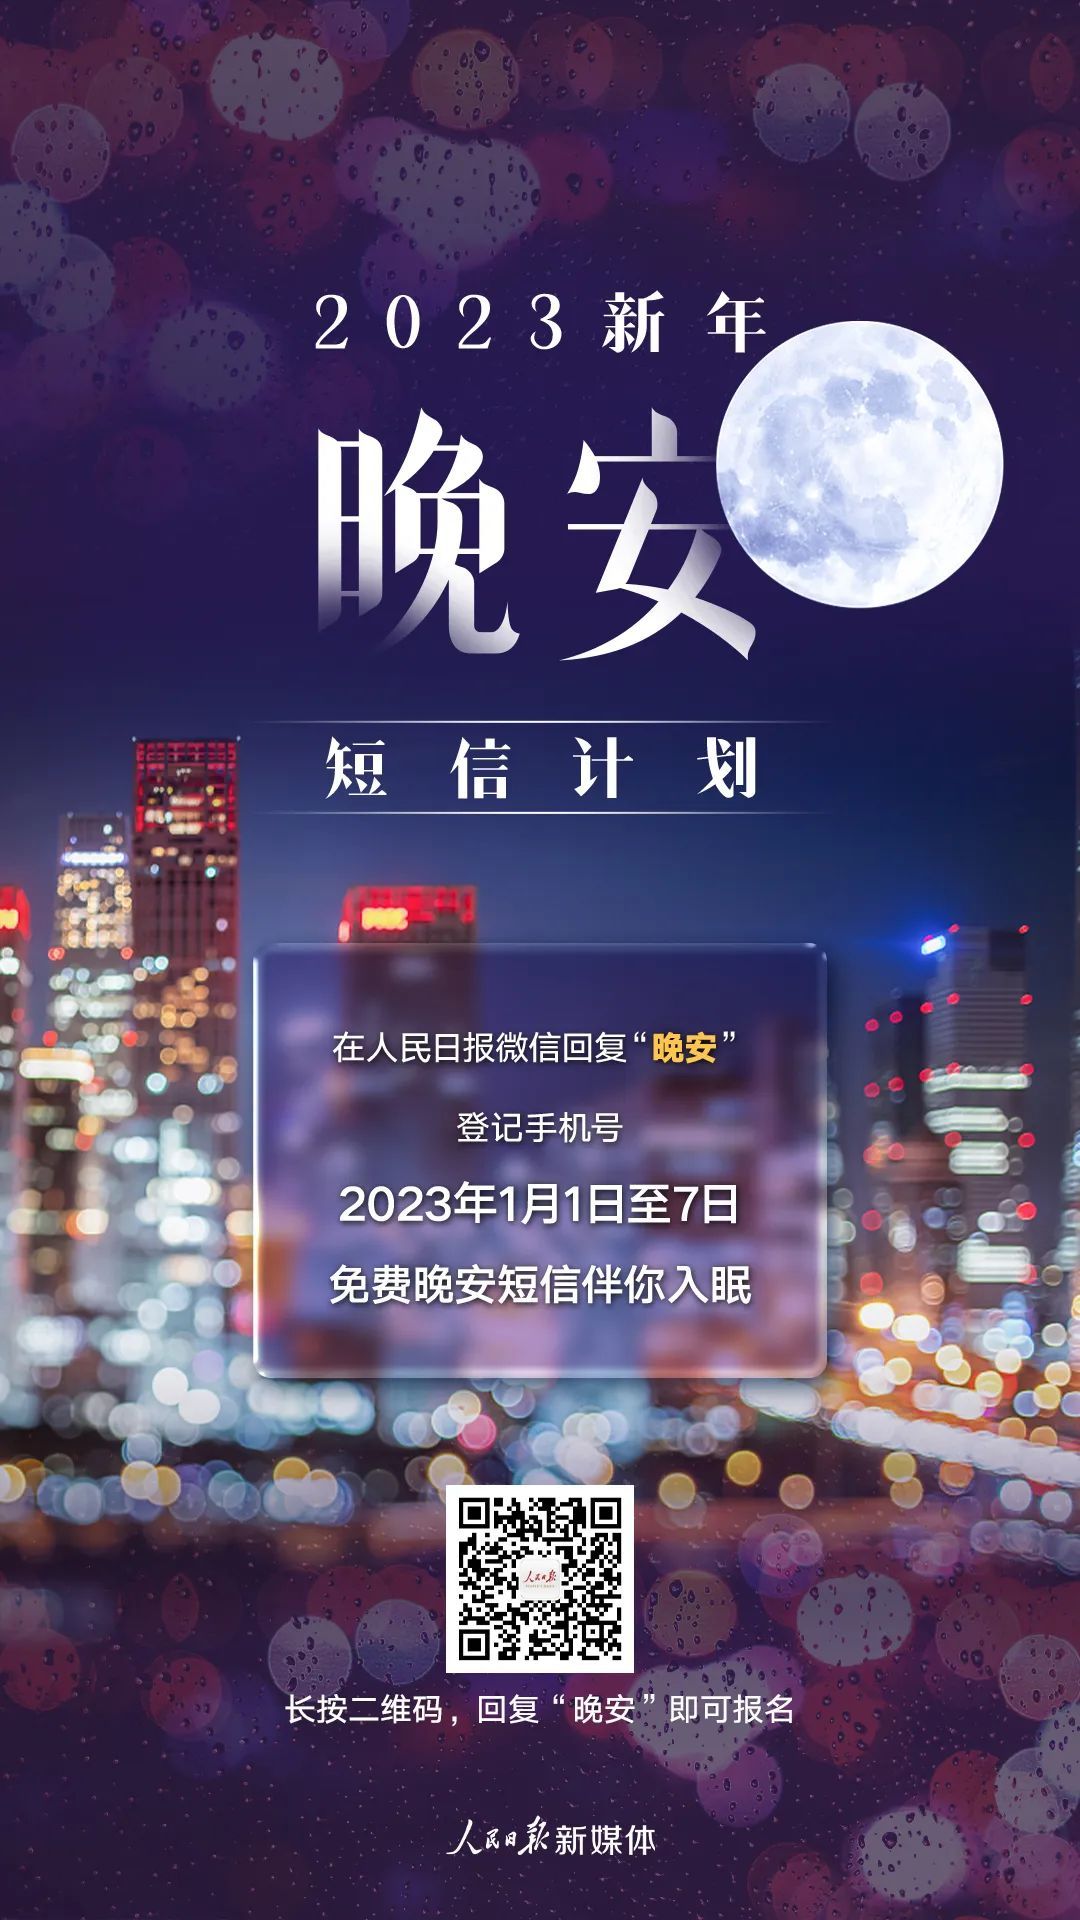 #2023跨年晚会#刘德华、吴京、黄渤、杨紫、迪丽热巴、周深给你发晚安短信啦！